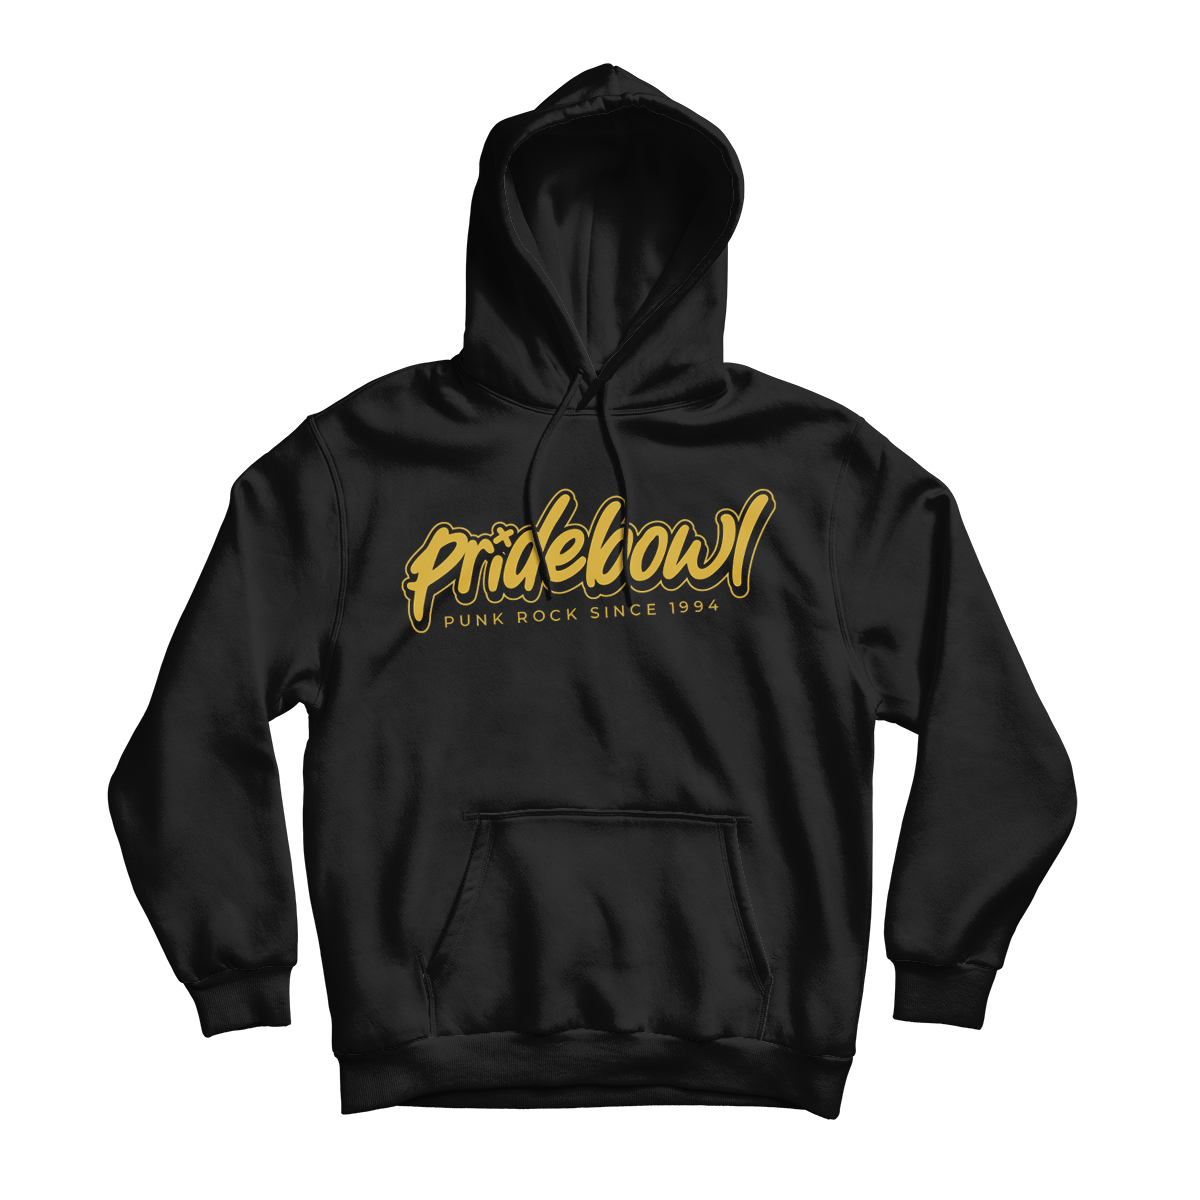 PRIDEBOWL - "Hostage" (Black) (Pullover Hoodie)